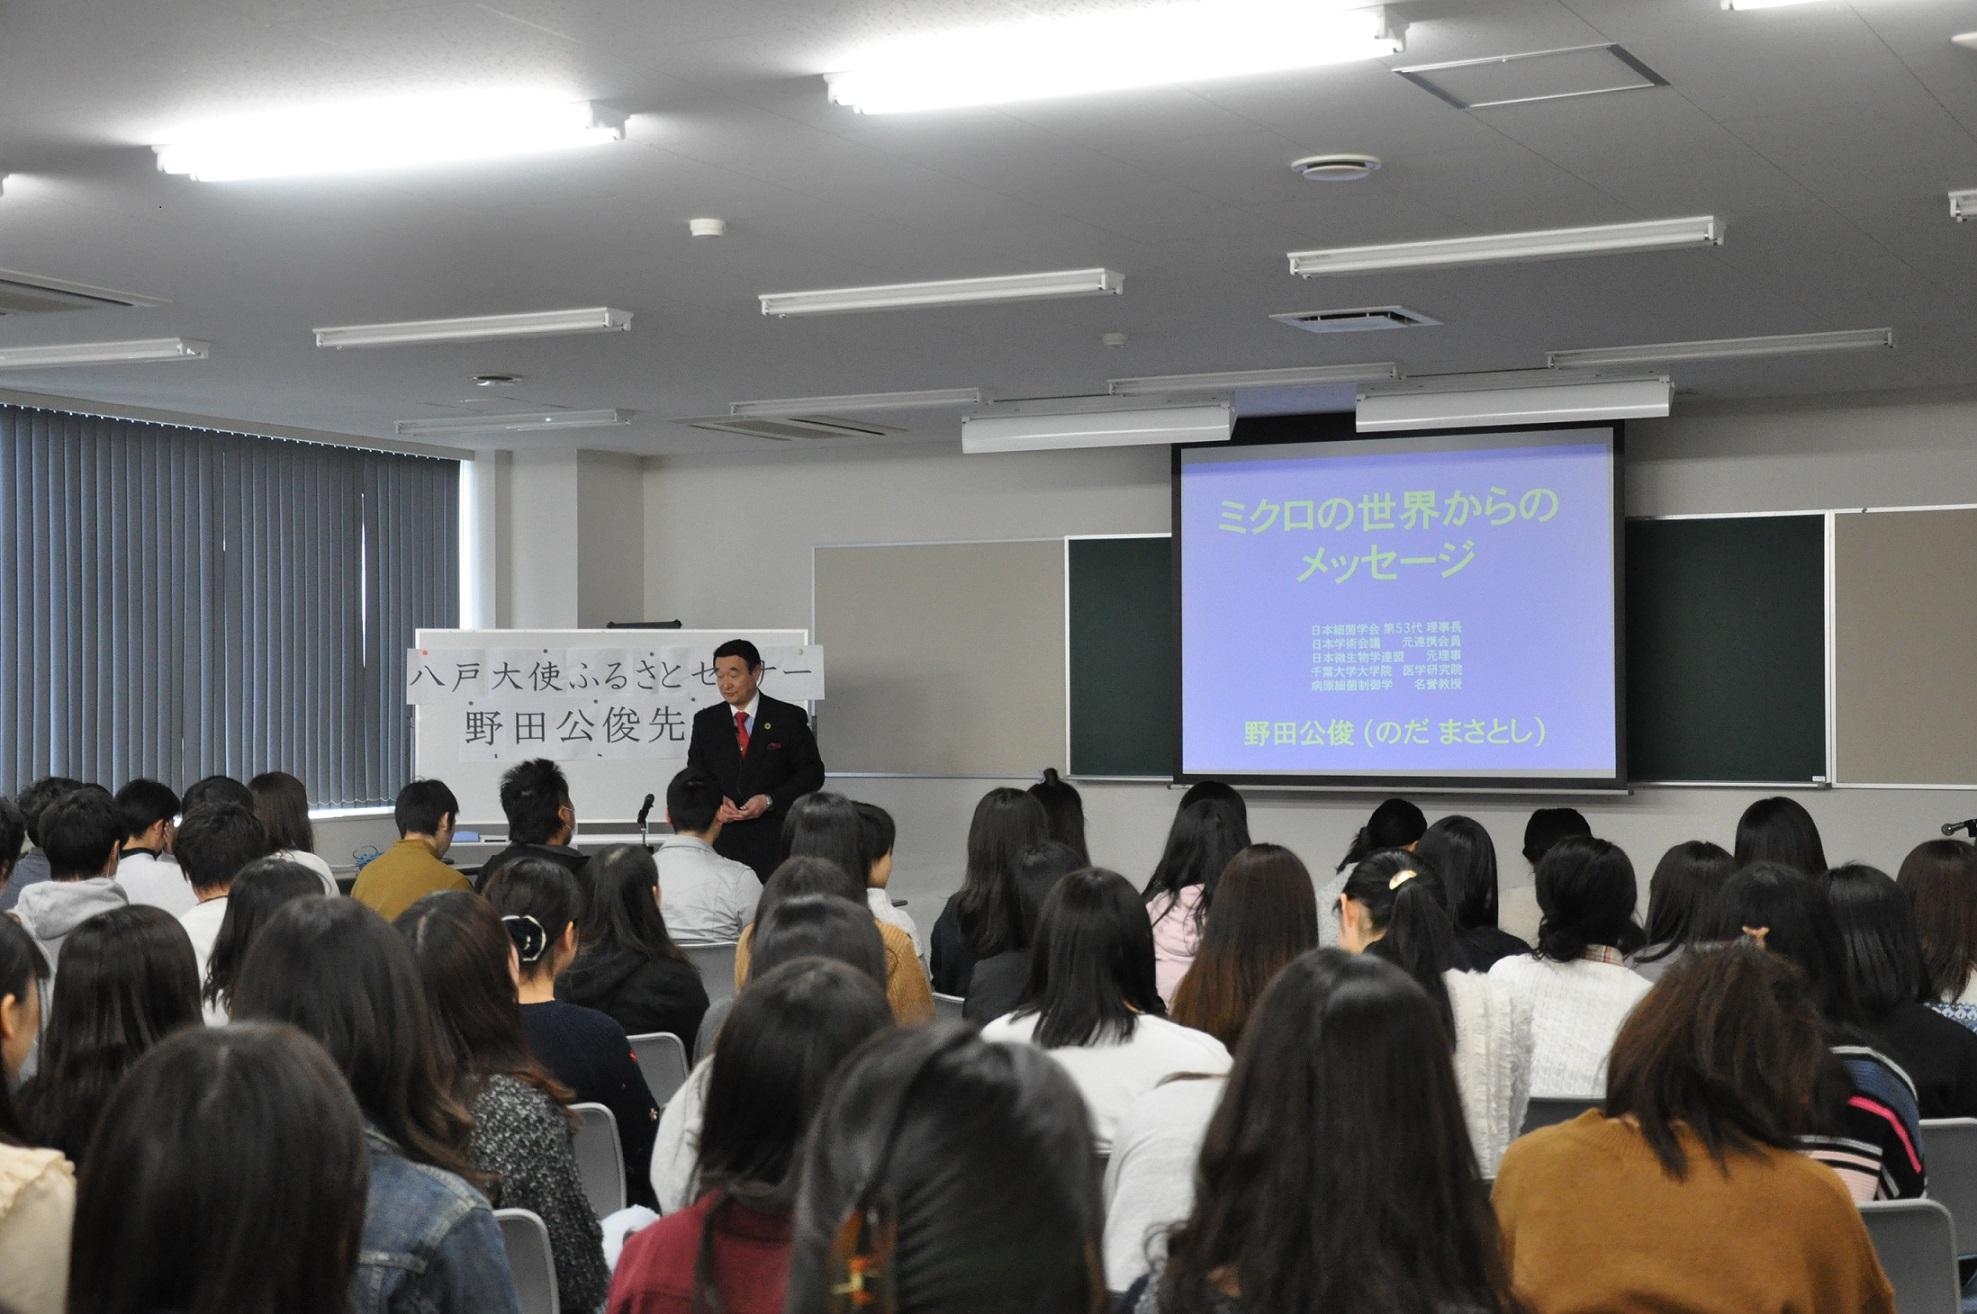 前に立って話をしている野田先生と席に着いている学生たちを、教室後方から撮影した写真